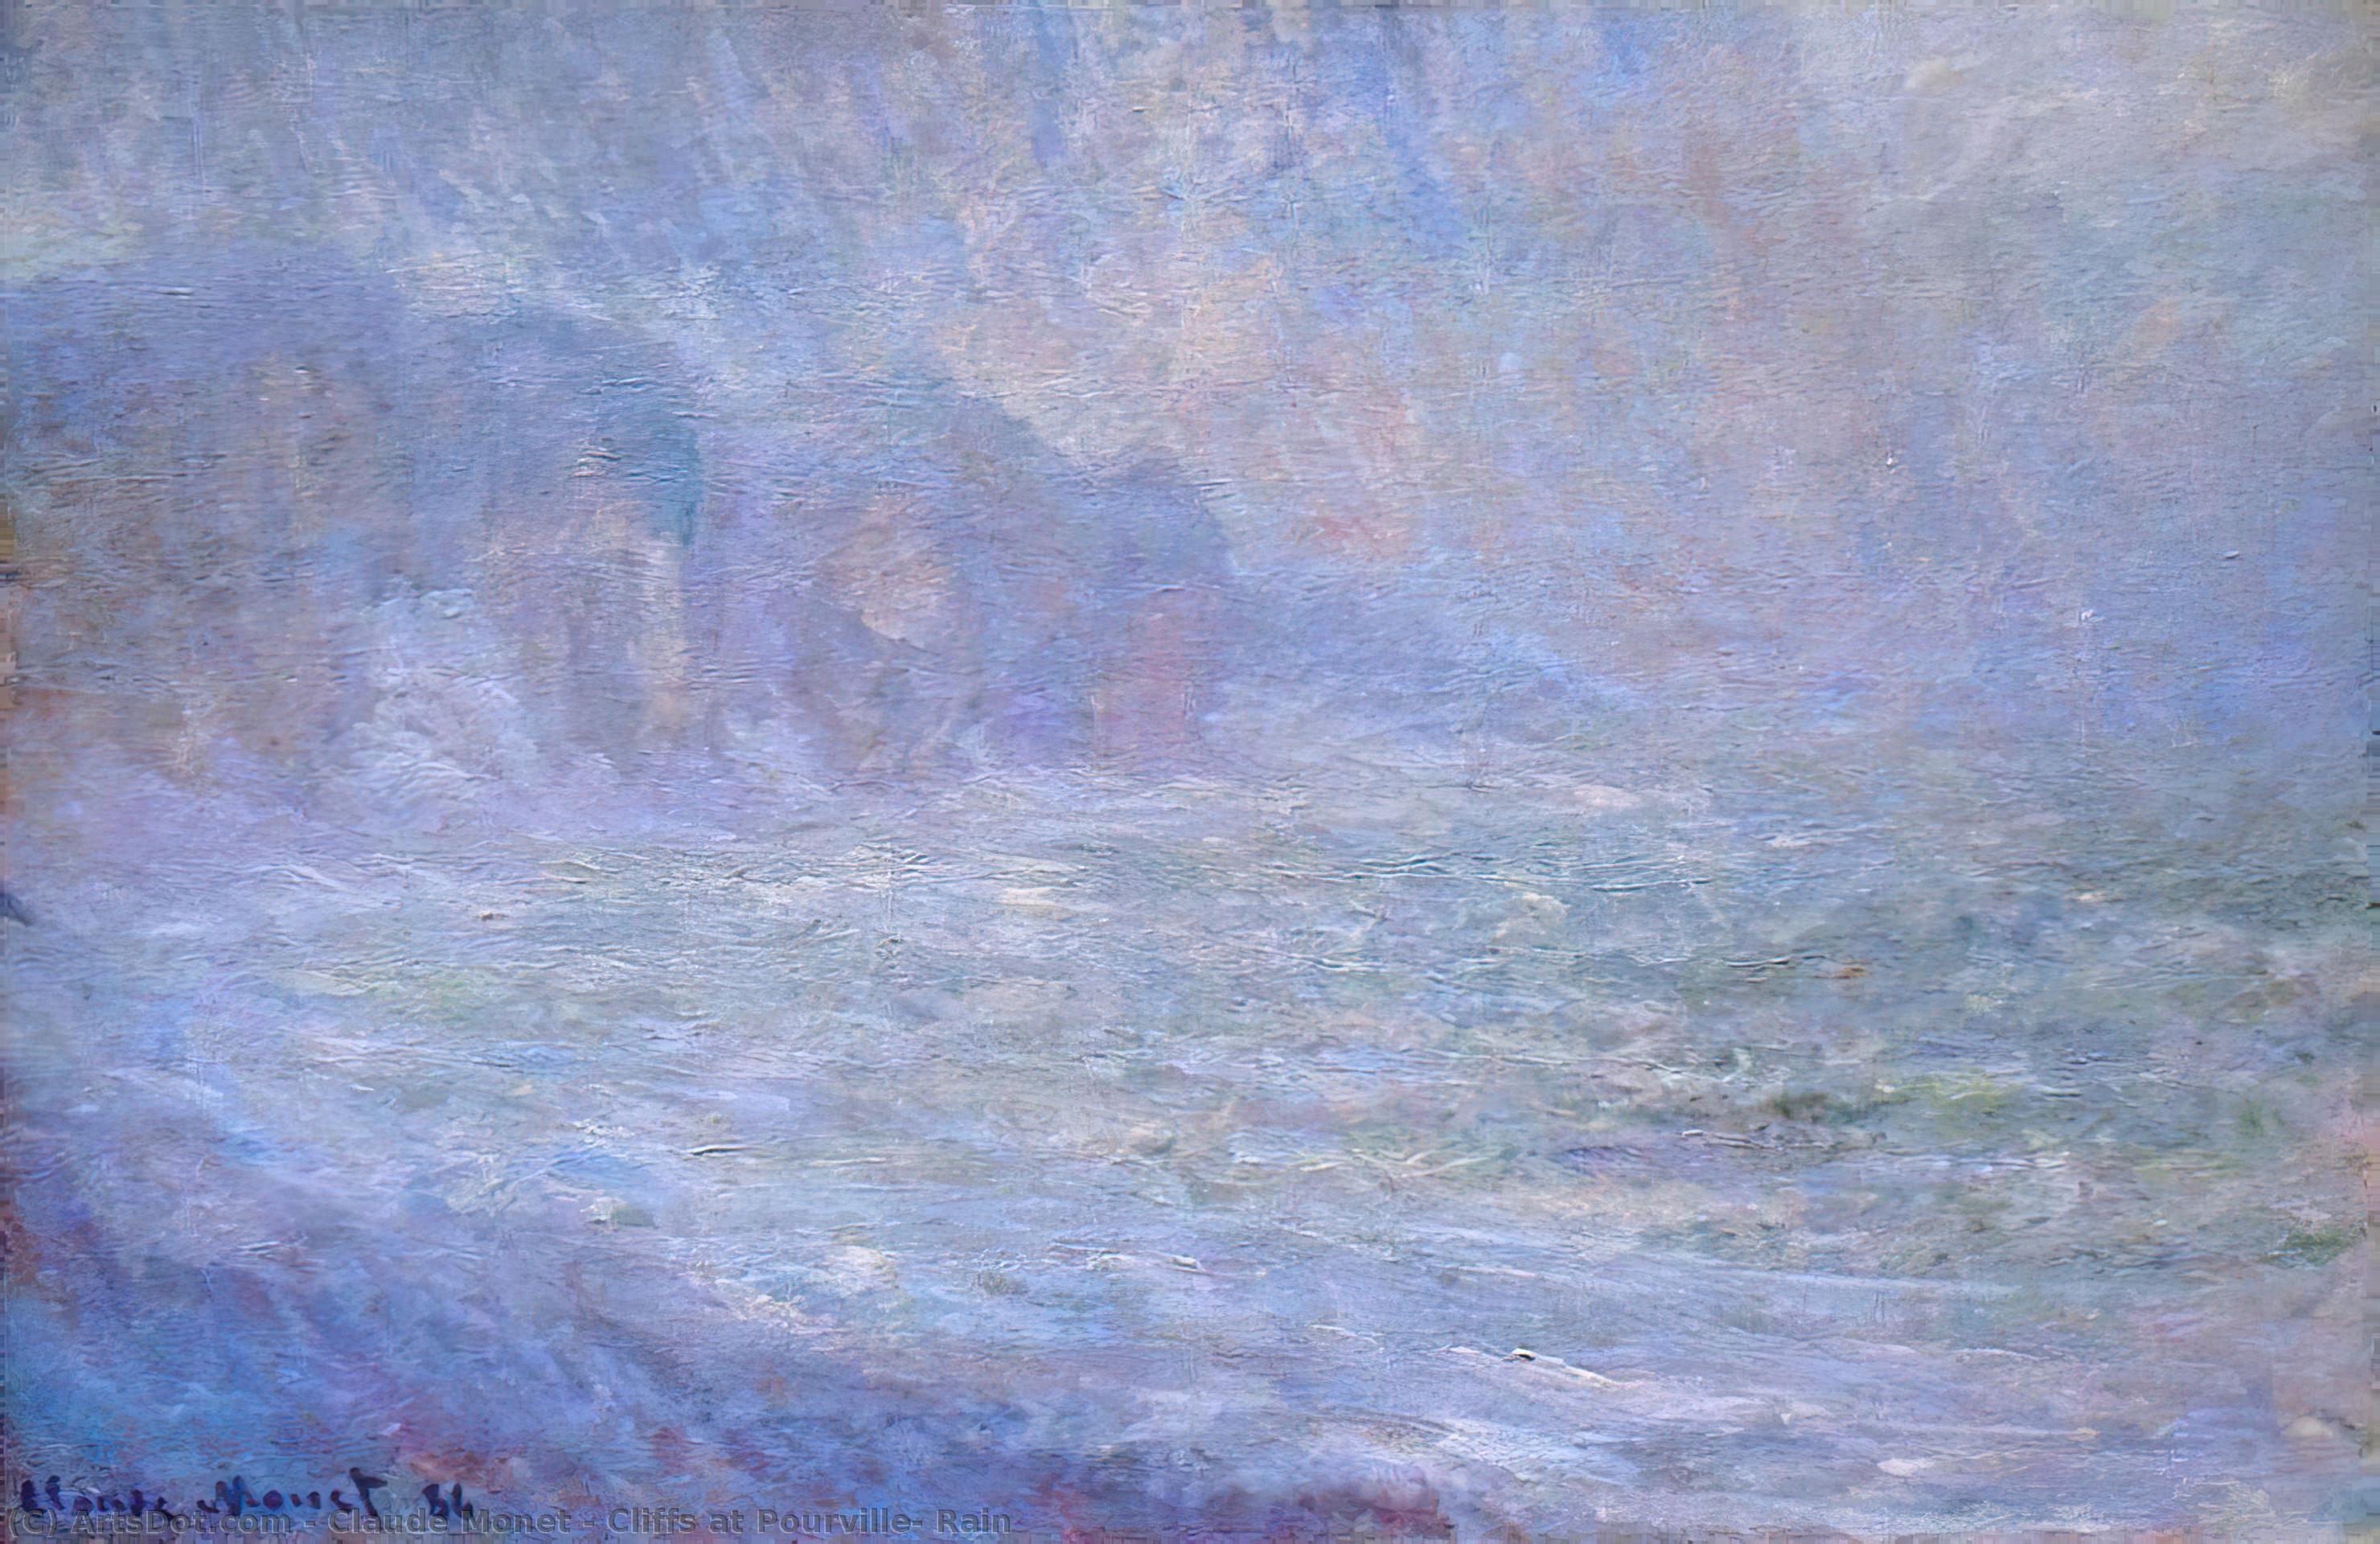 Wikoo.org - موسوعة الفنون الجميلة - اللوحة، العمل الفني Claude Monet - Cliffs at Pourville, Rain